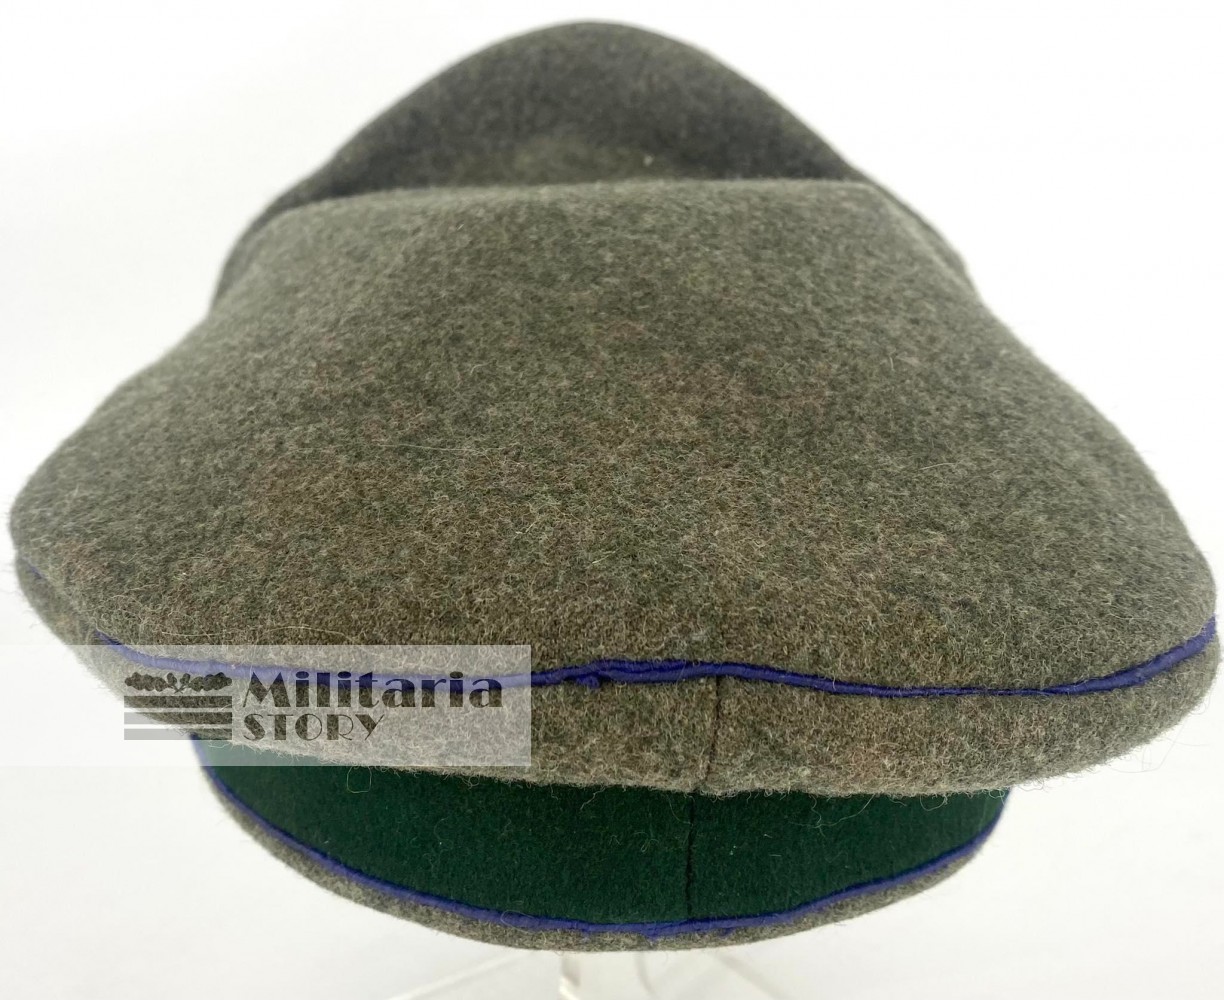 Heer Medical Officer visor cap - Heer Medical Officer visor cap: WW2 German Headgear